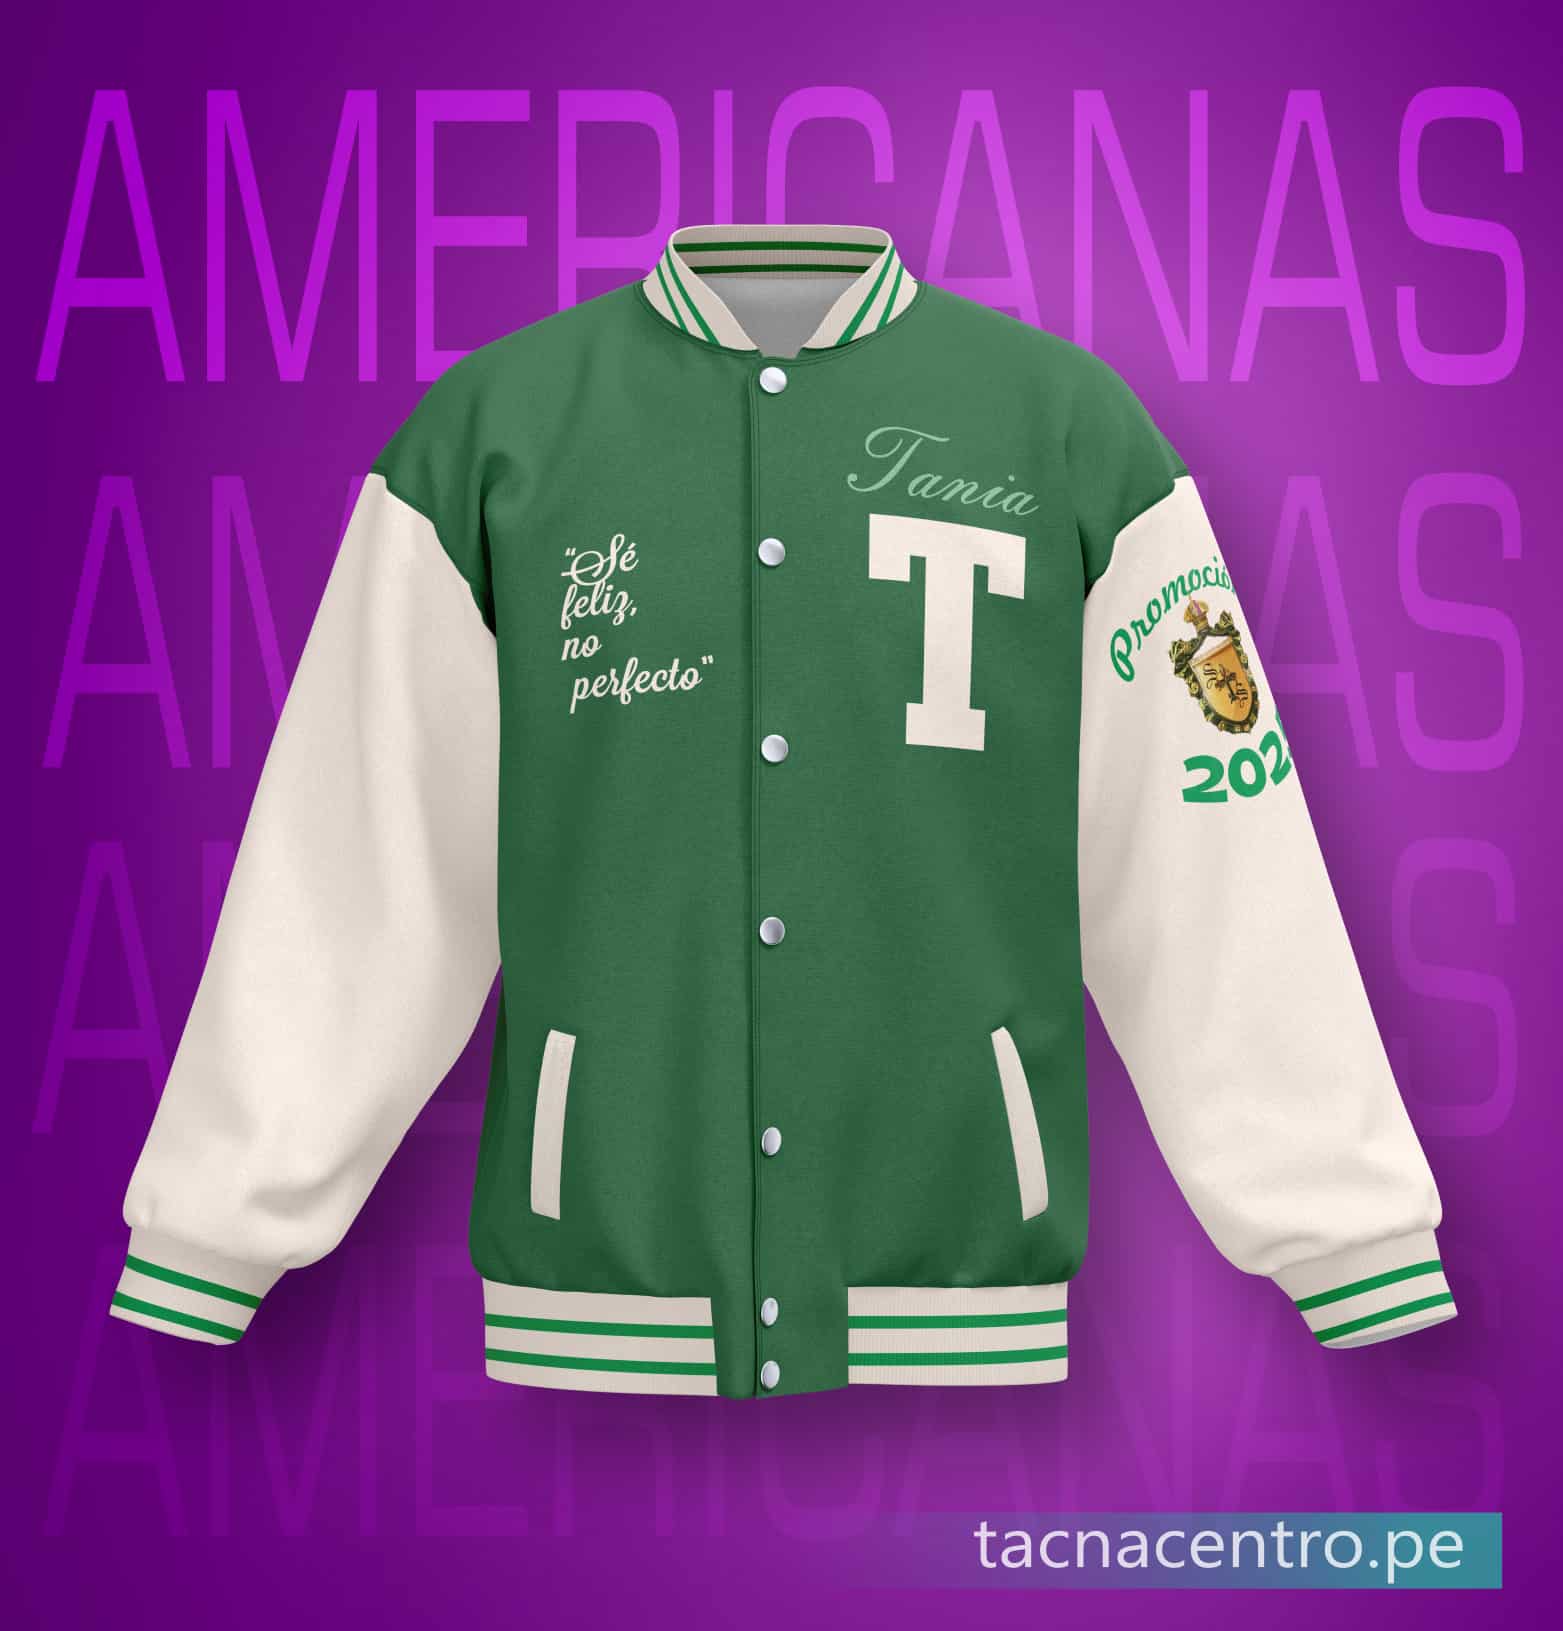 modelos de casacas de promocion americanas personalizadas color verde y blanco, insignia de colegio bordad en la manga y detalles estampados en el pecho